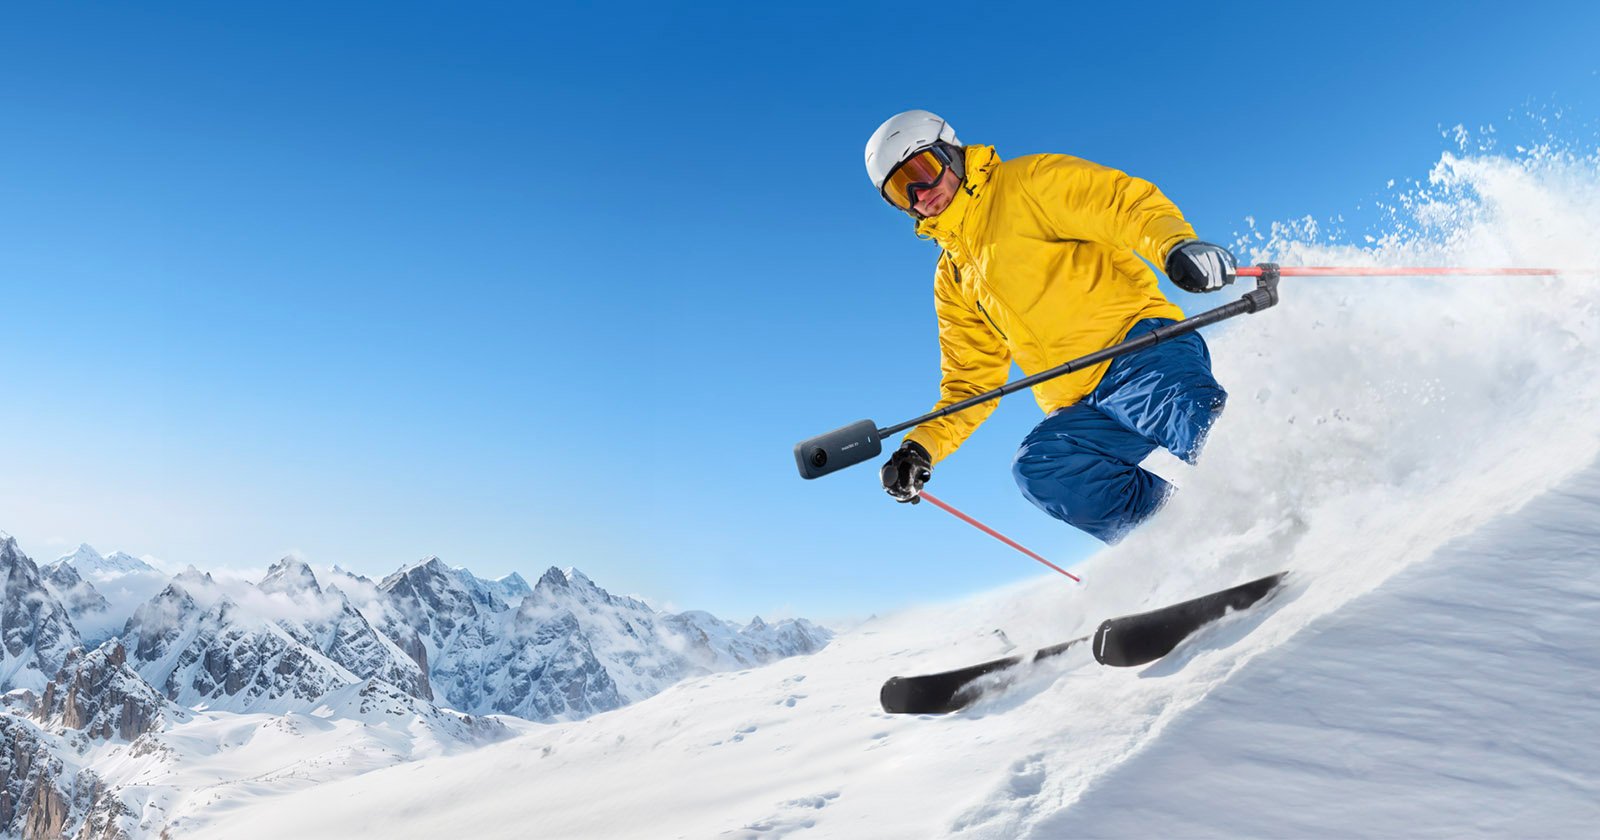  insta360 ski pole mount makes epic videos 